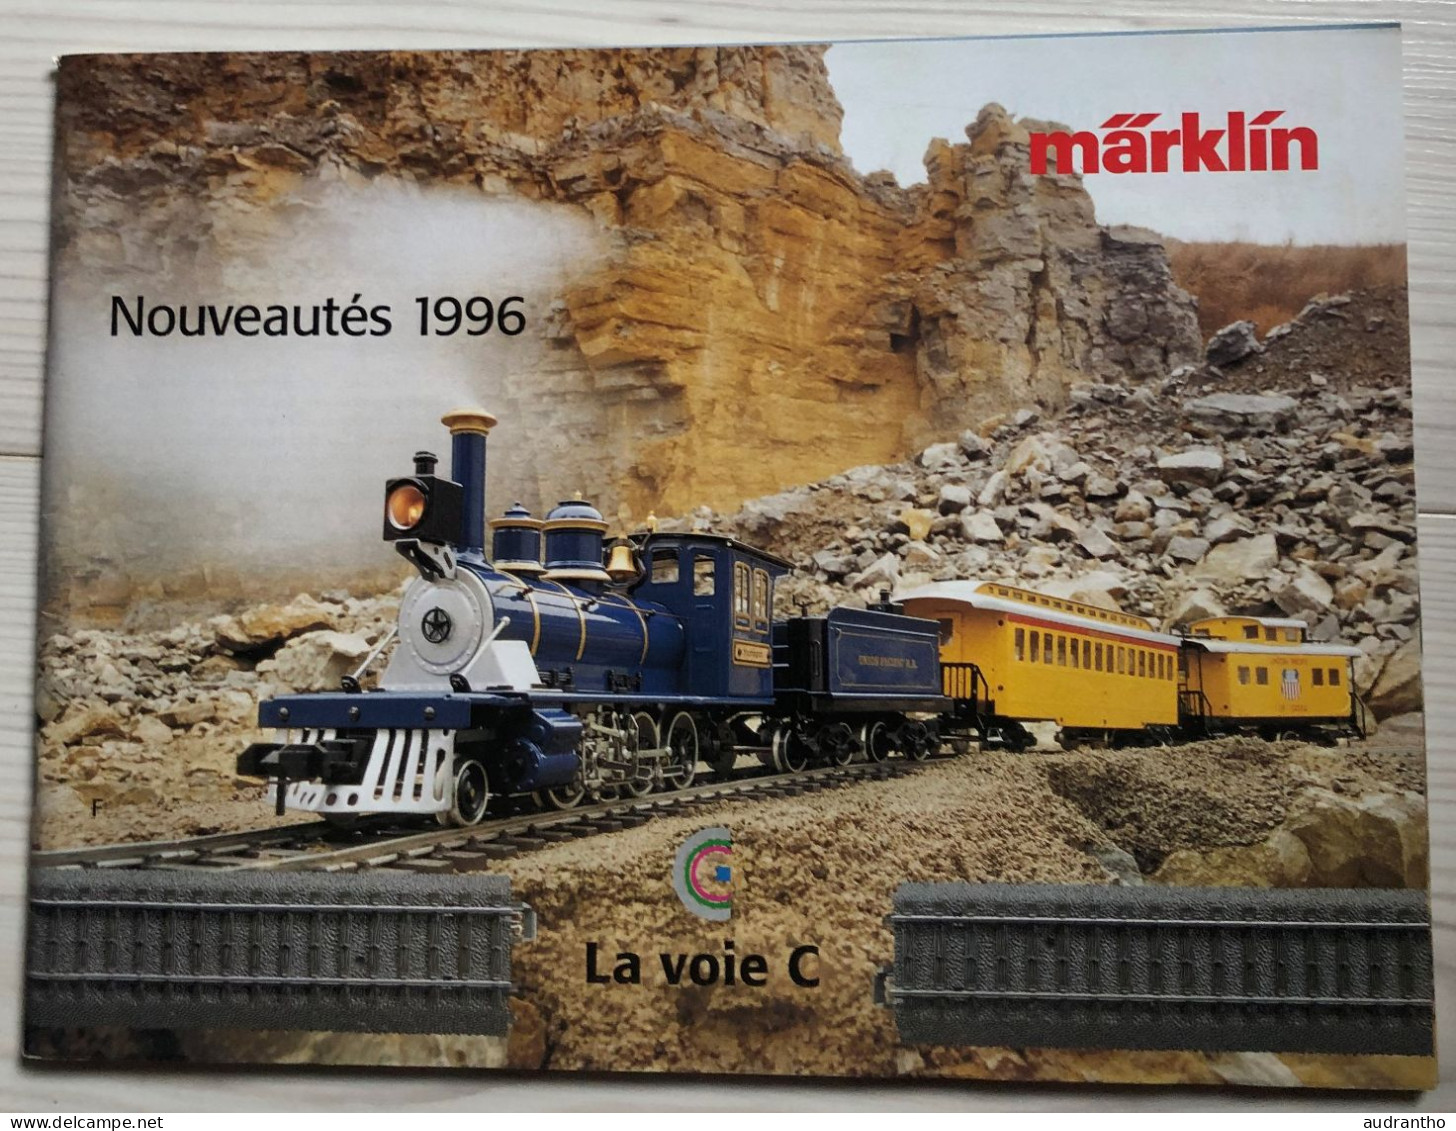 Catalogue Nouveautés 1996 MARKLIN Modélisme Ferroviaire Train Rail - French